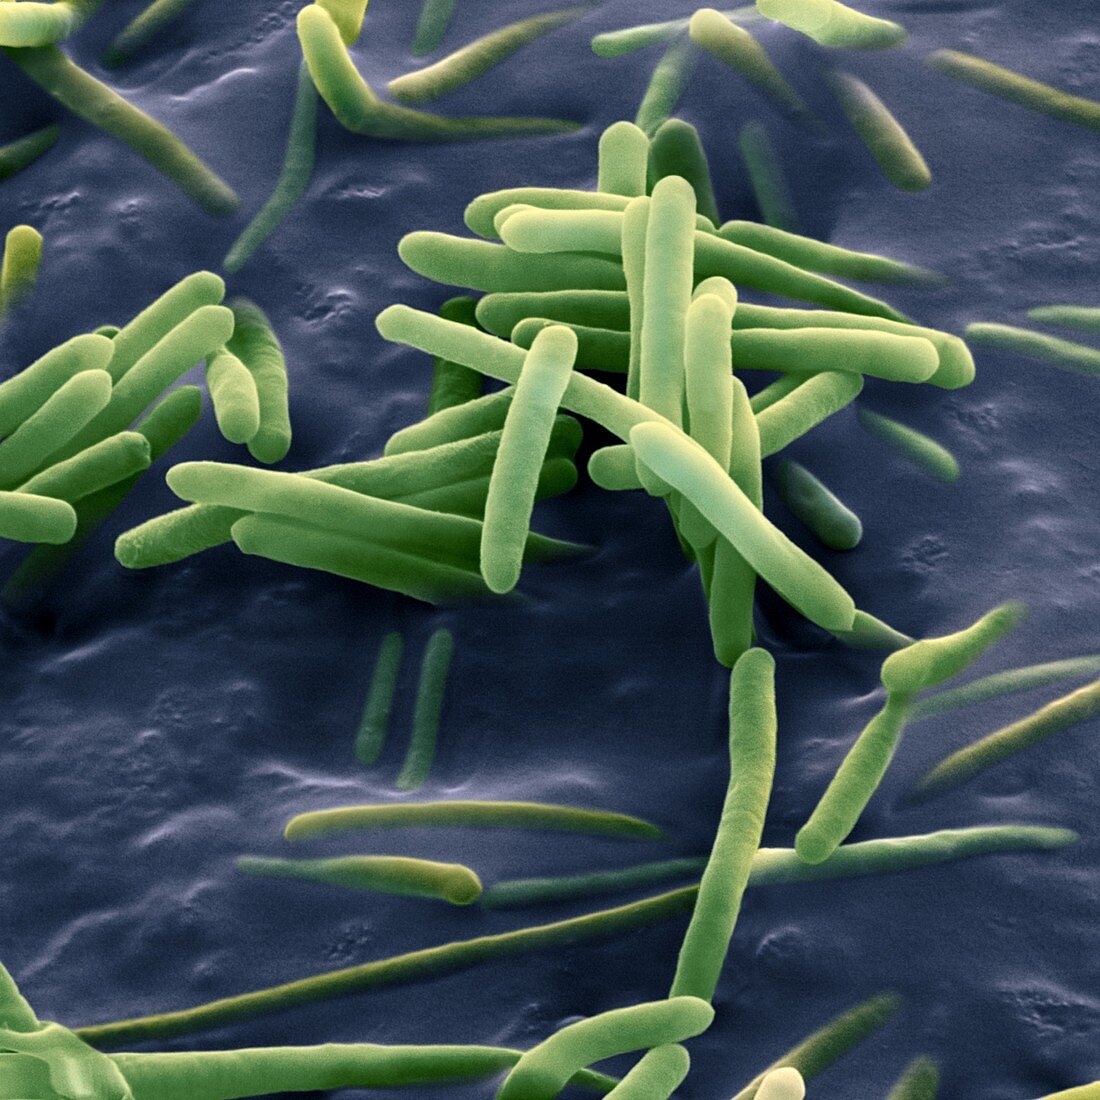 Bacillus sphaericus, SEM